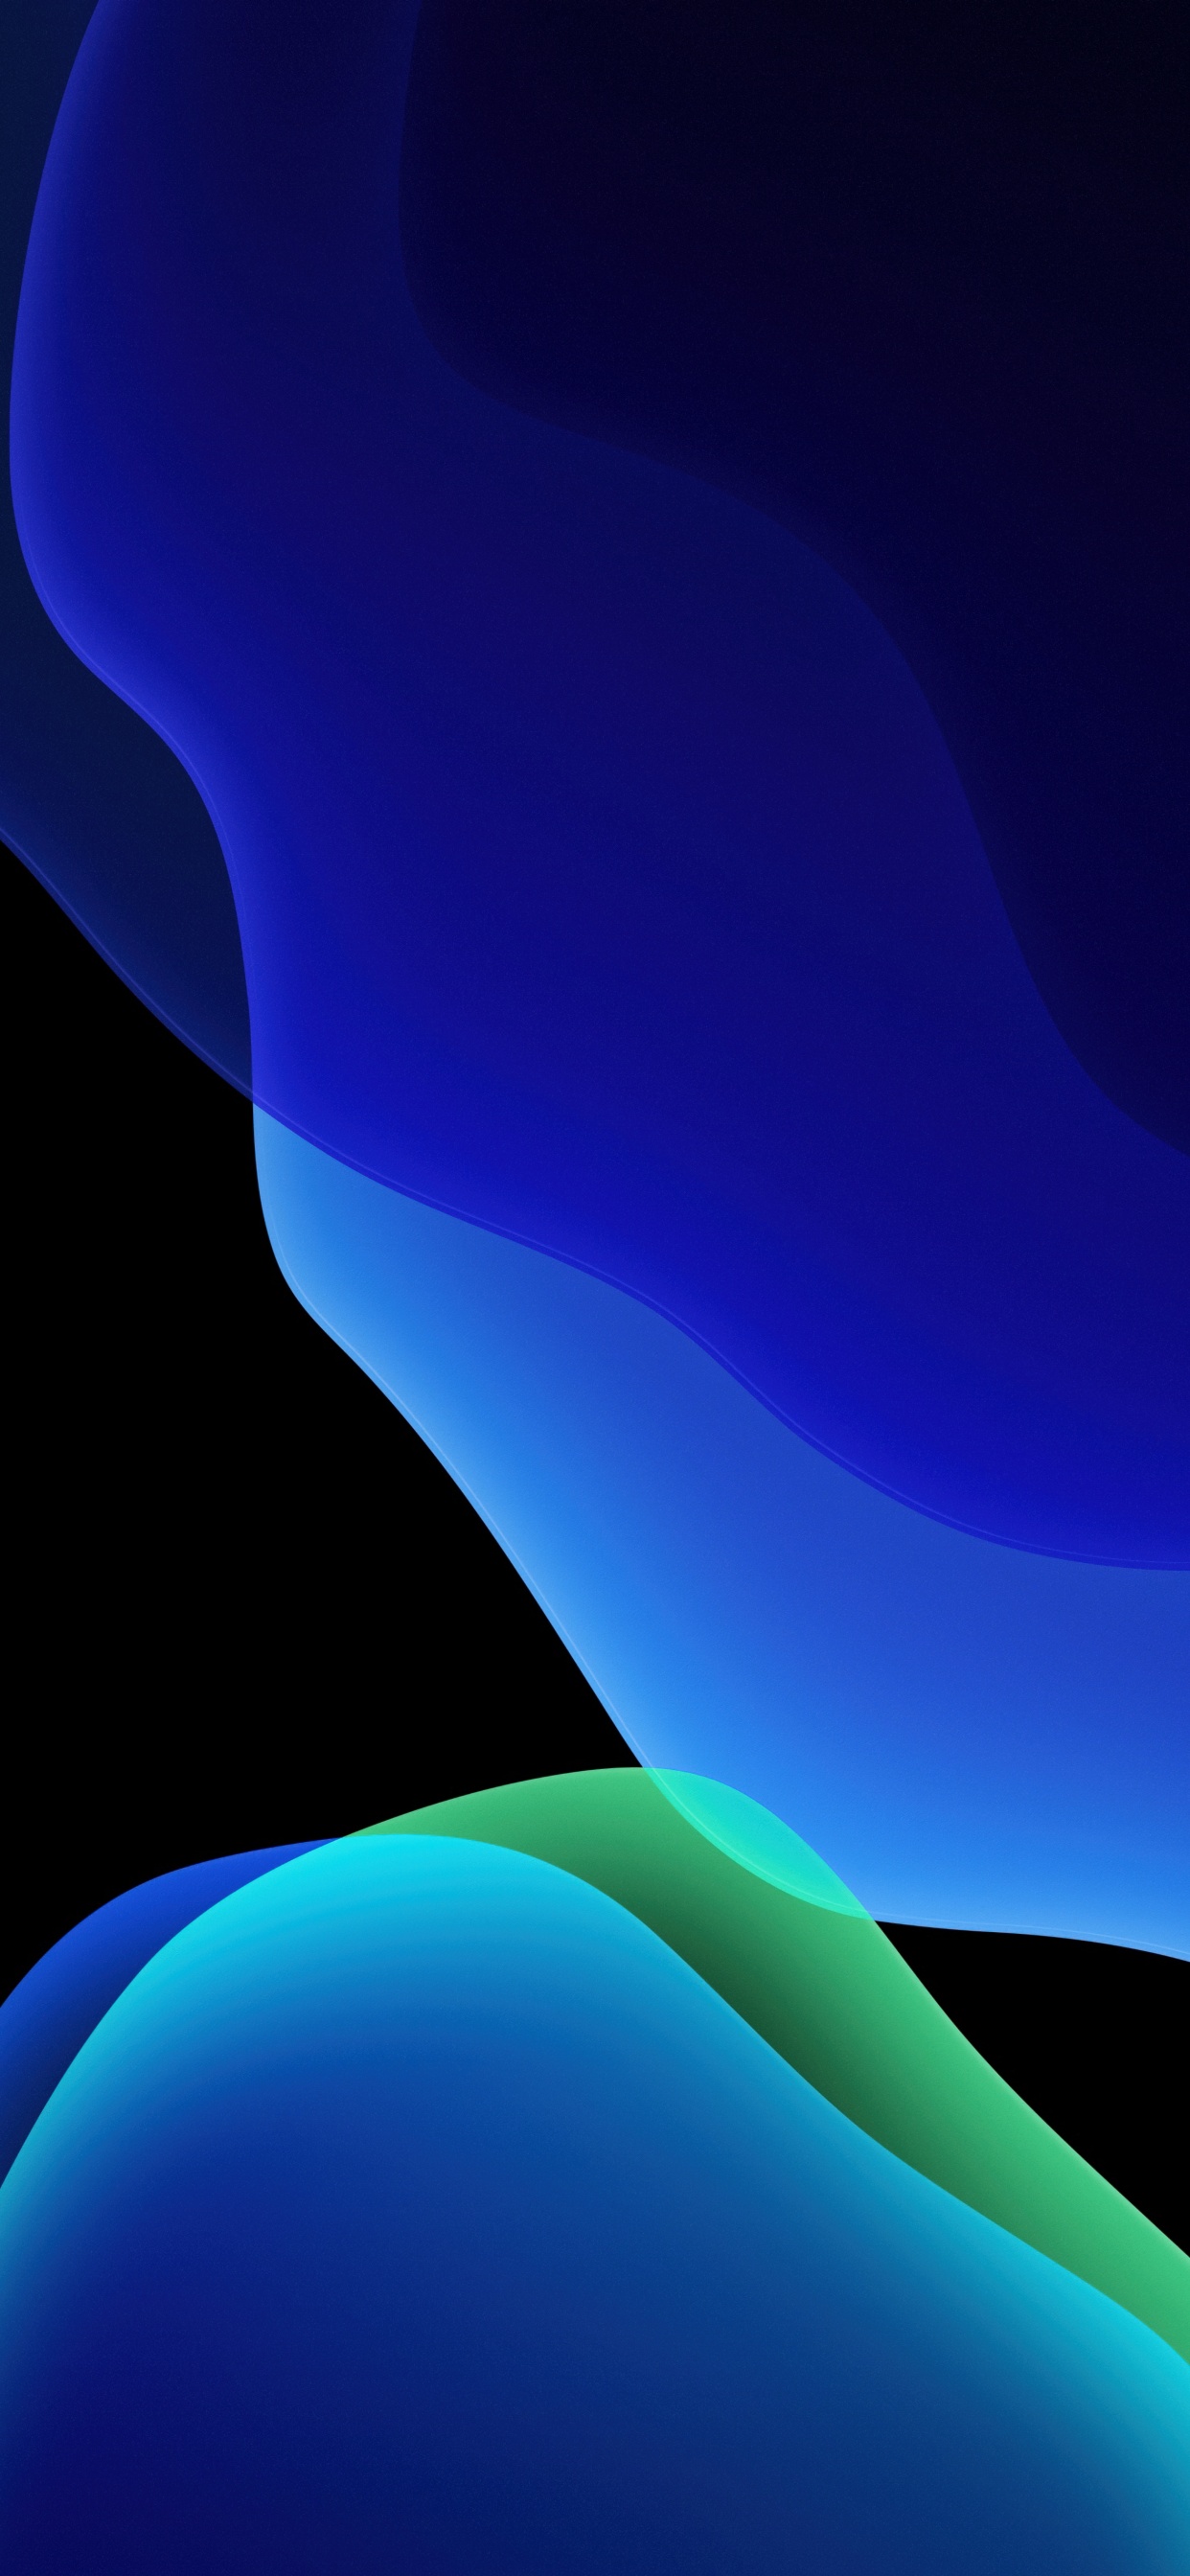 Tả hưởng sự mới lạ và hiện đại của bộ sưu tập hình nền iOS 13 màu xanh đậm này. Hình nền ấn tượng này đã trở thành biểu tượng của sự năng động và sự thanh lịch trong thế giới công nghệ hiện đại, và bạn có thể tận hưởng nó ngay bây giờ. Hãy xem hình ảnh để khám phá thêm về sự độc đáo của chúng. 